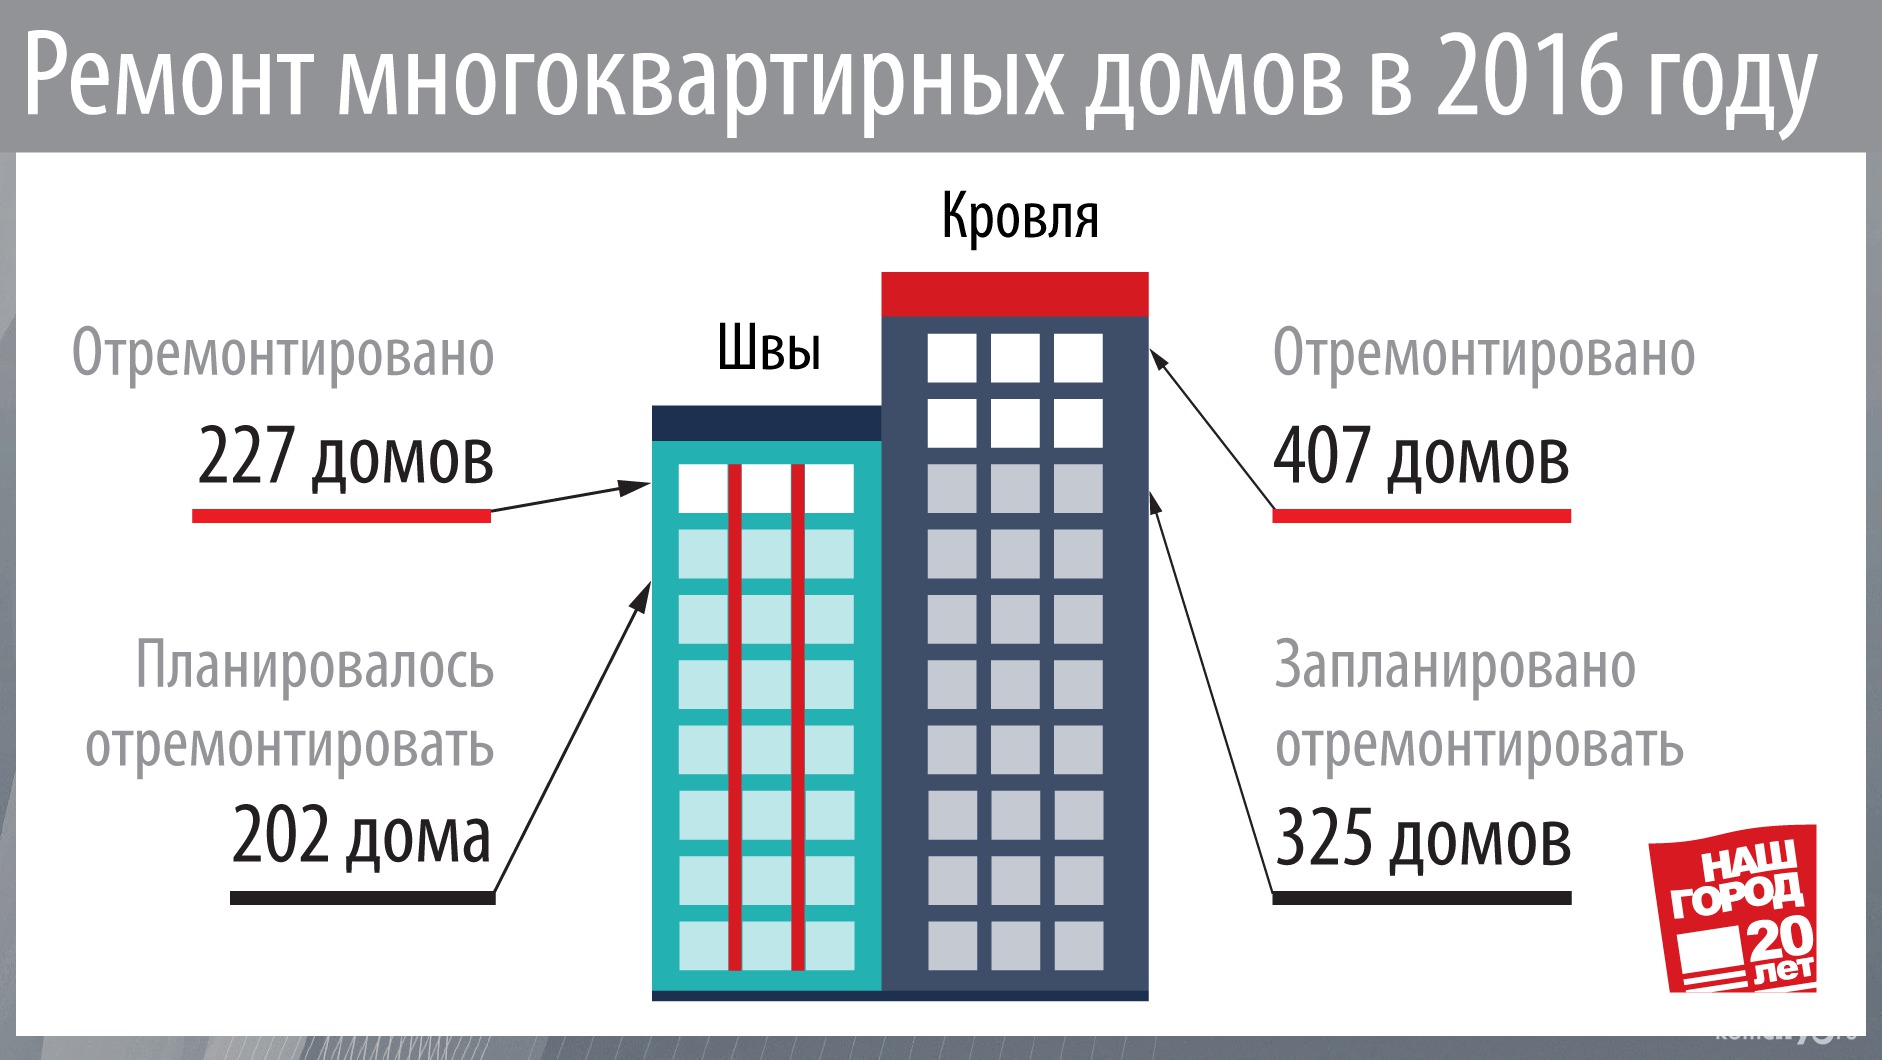 В Комсомольске перевыполнены планы ремонта кровель и межпанельных швов многоквартирных домов